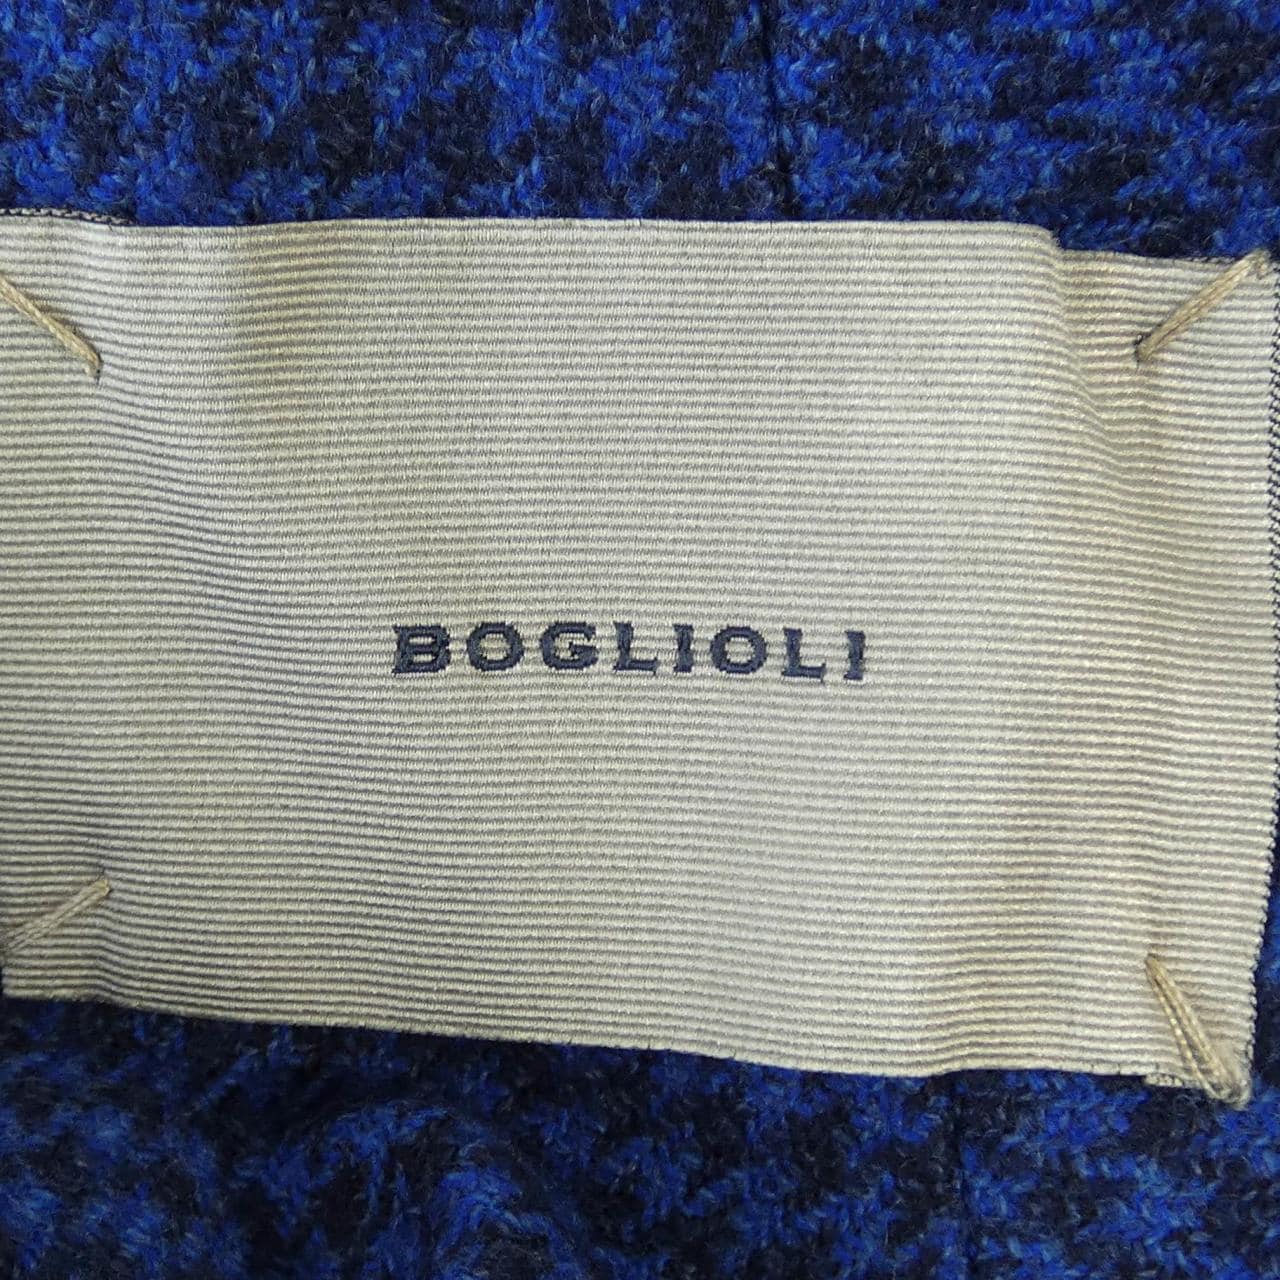 ボリオリ BOGLIOLI ジャケット